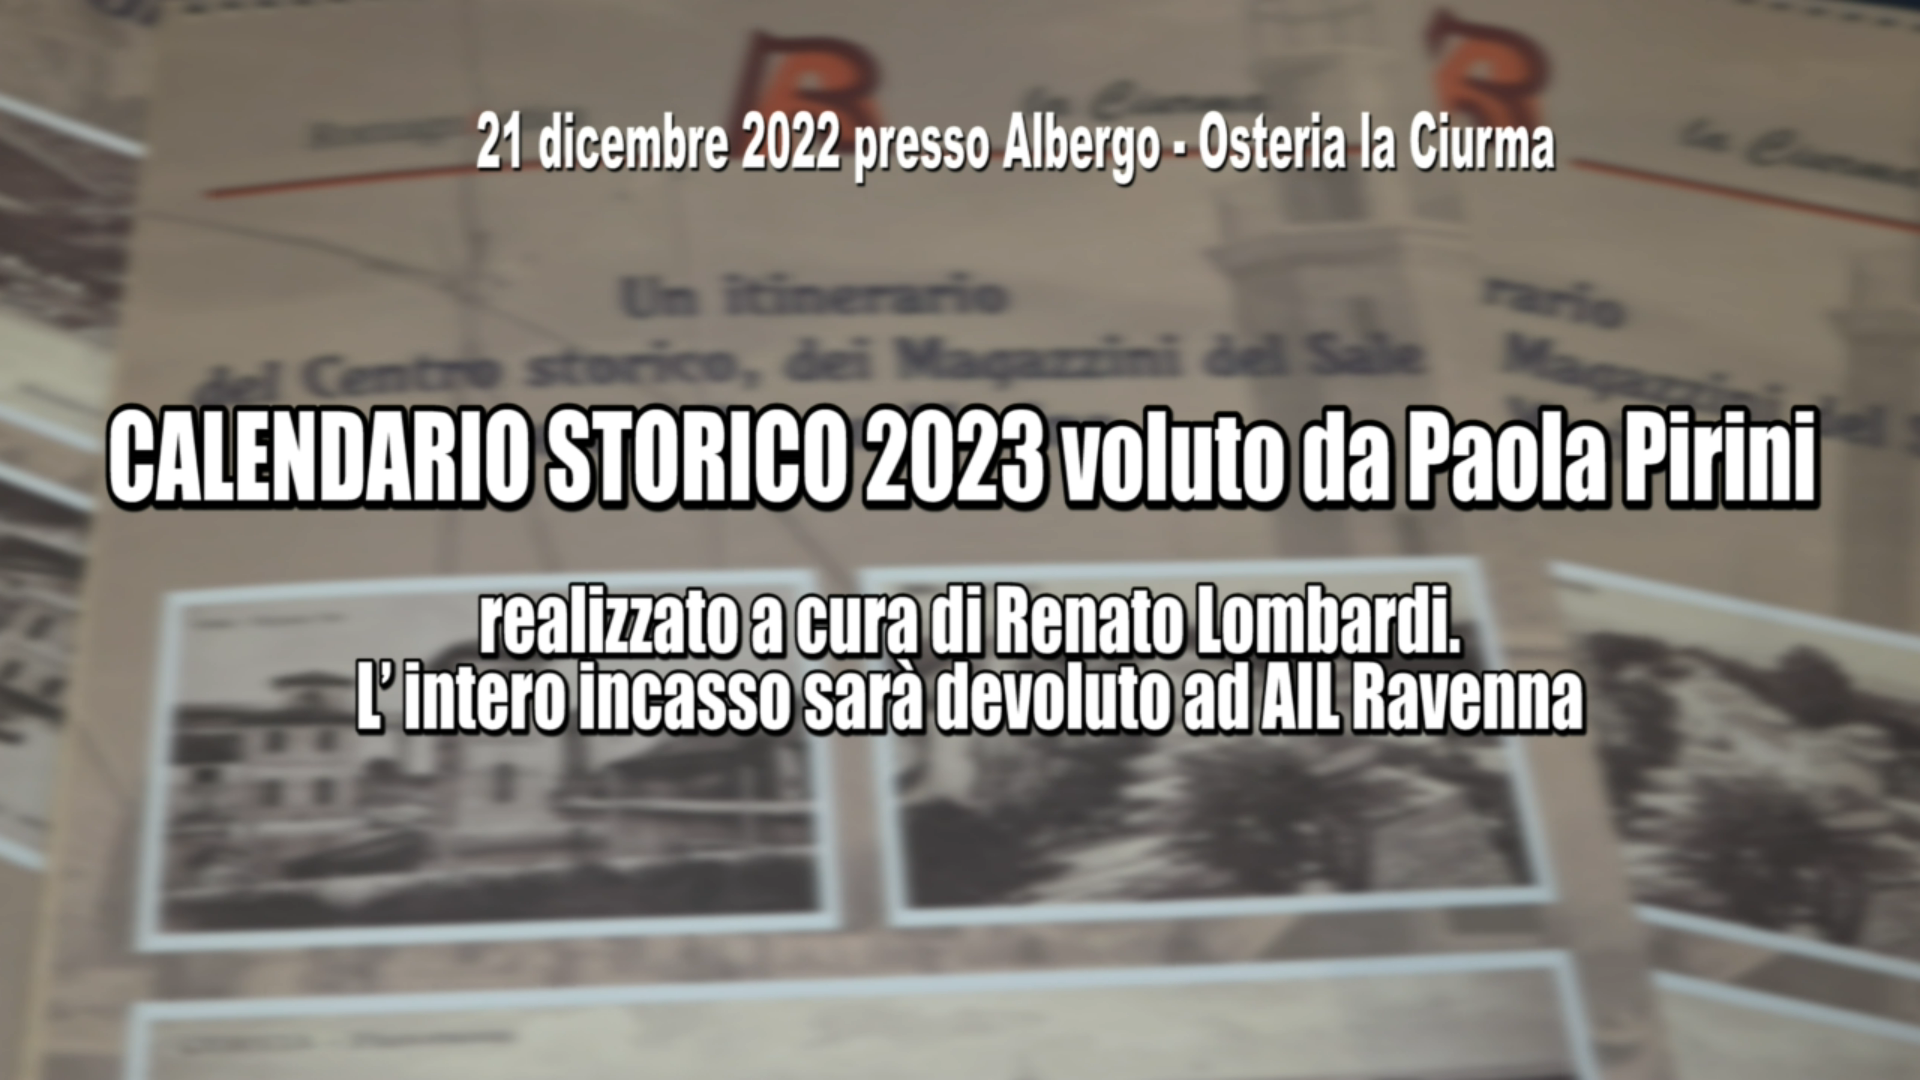 Calendario Storico 2023 voluto da Paola Pirini: presso Albergo – Osteria “La Ciurma”